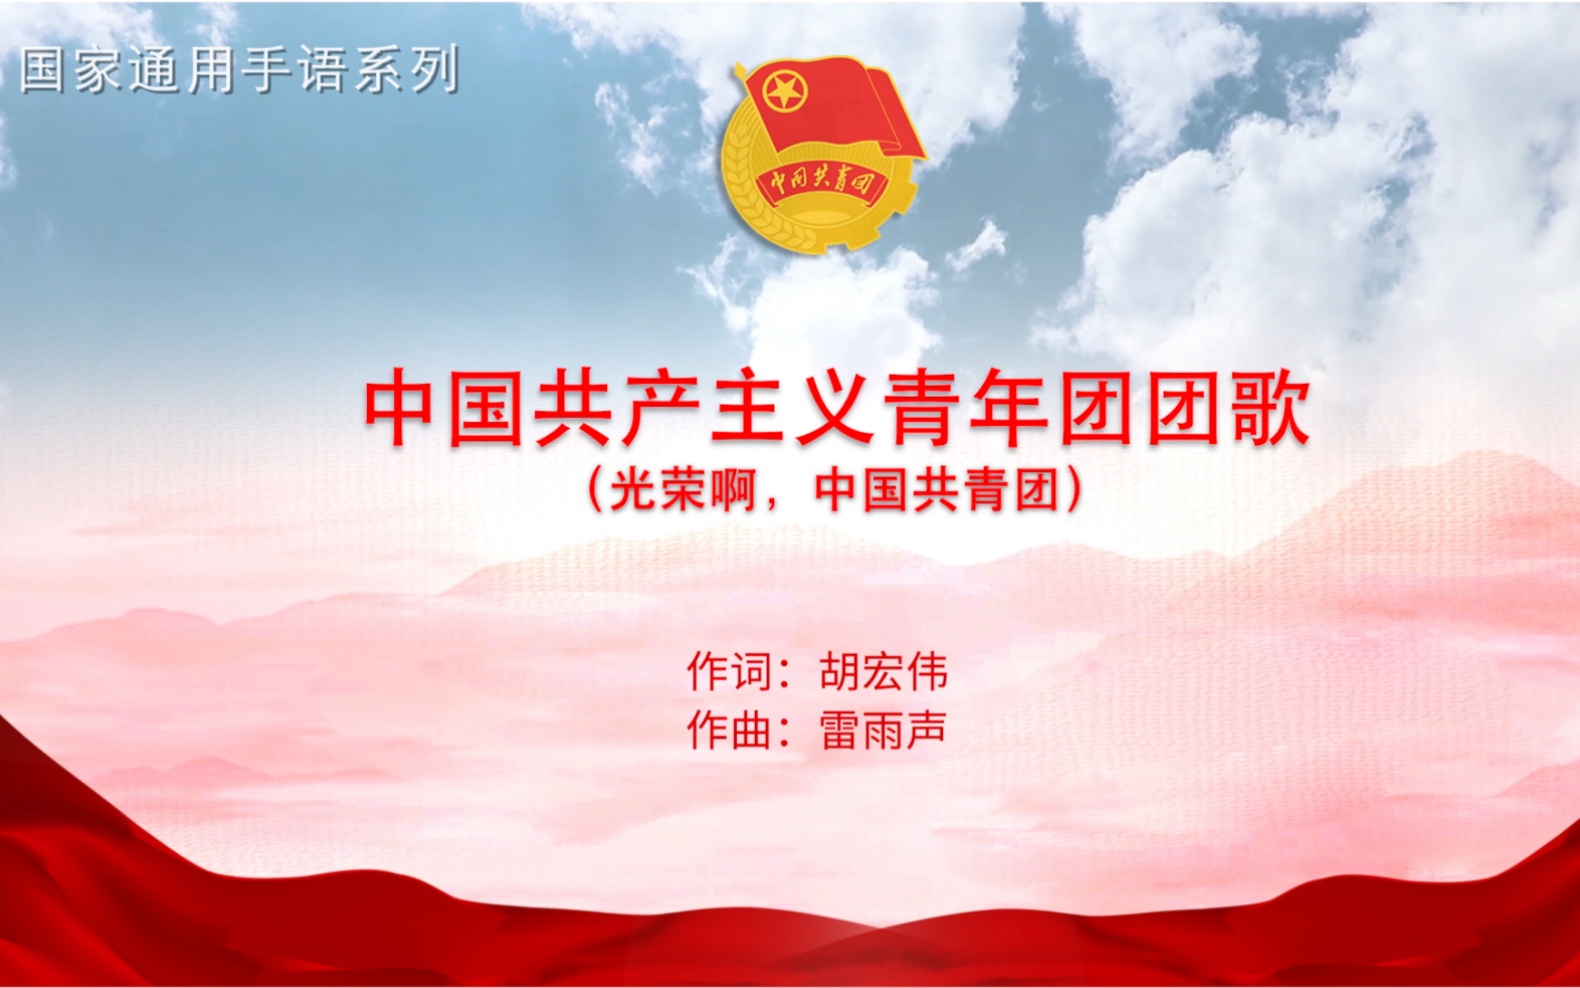 《中国共产主义青年团团歌》国家通用手语版